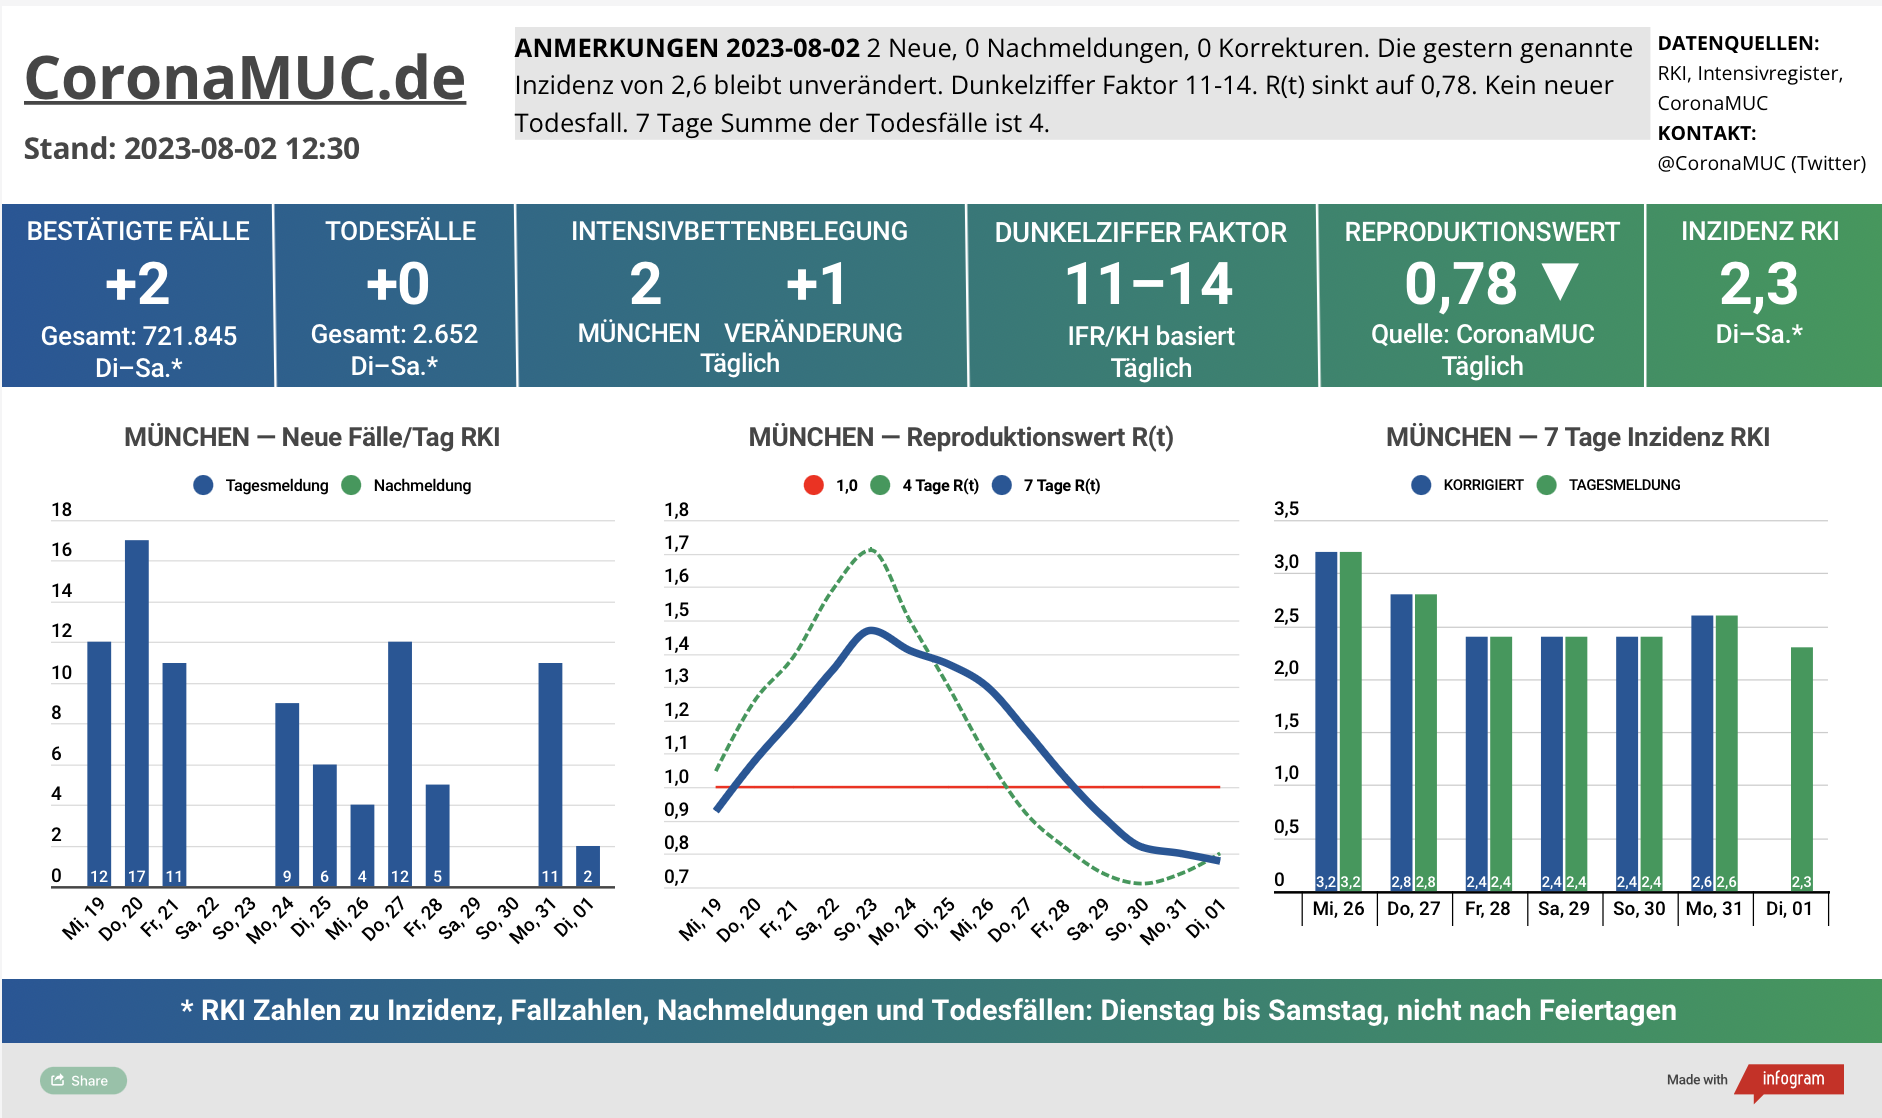 2023-08-02 Dashboard mit den Zahlen für München. Drei Graphen. Erste zeigt Neu- und Nachmeldungen, wieder ruhigere Zahlen. Zweite zeigt R(t) Wert für München, der auf 0,78 sinkt. Dritte zeigt Inzidenz, die zwar weiter weit unter 50 liegt aber wegen mangelnder PCR Tests wenig aussagekräftig ist.